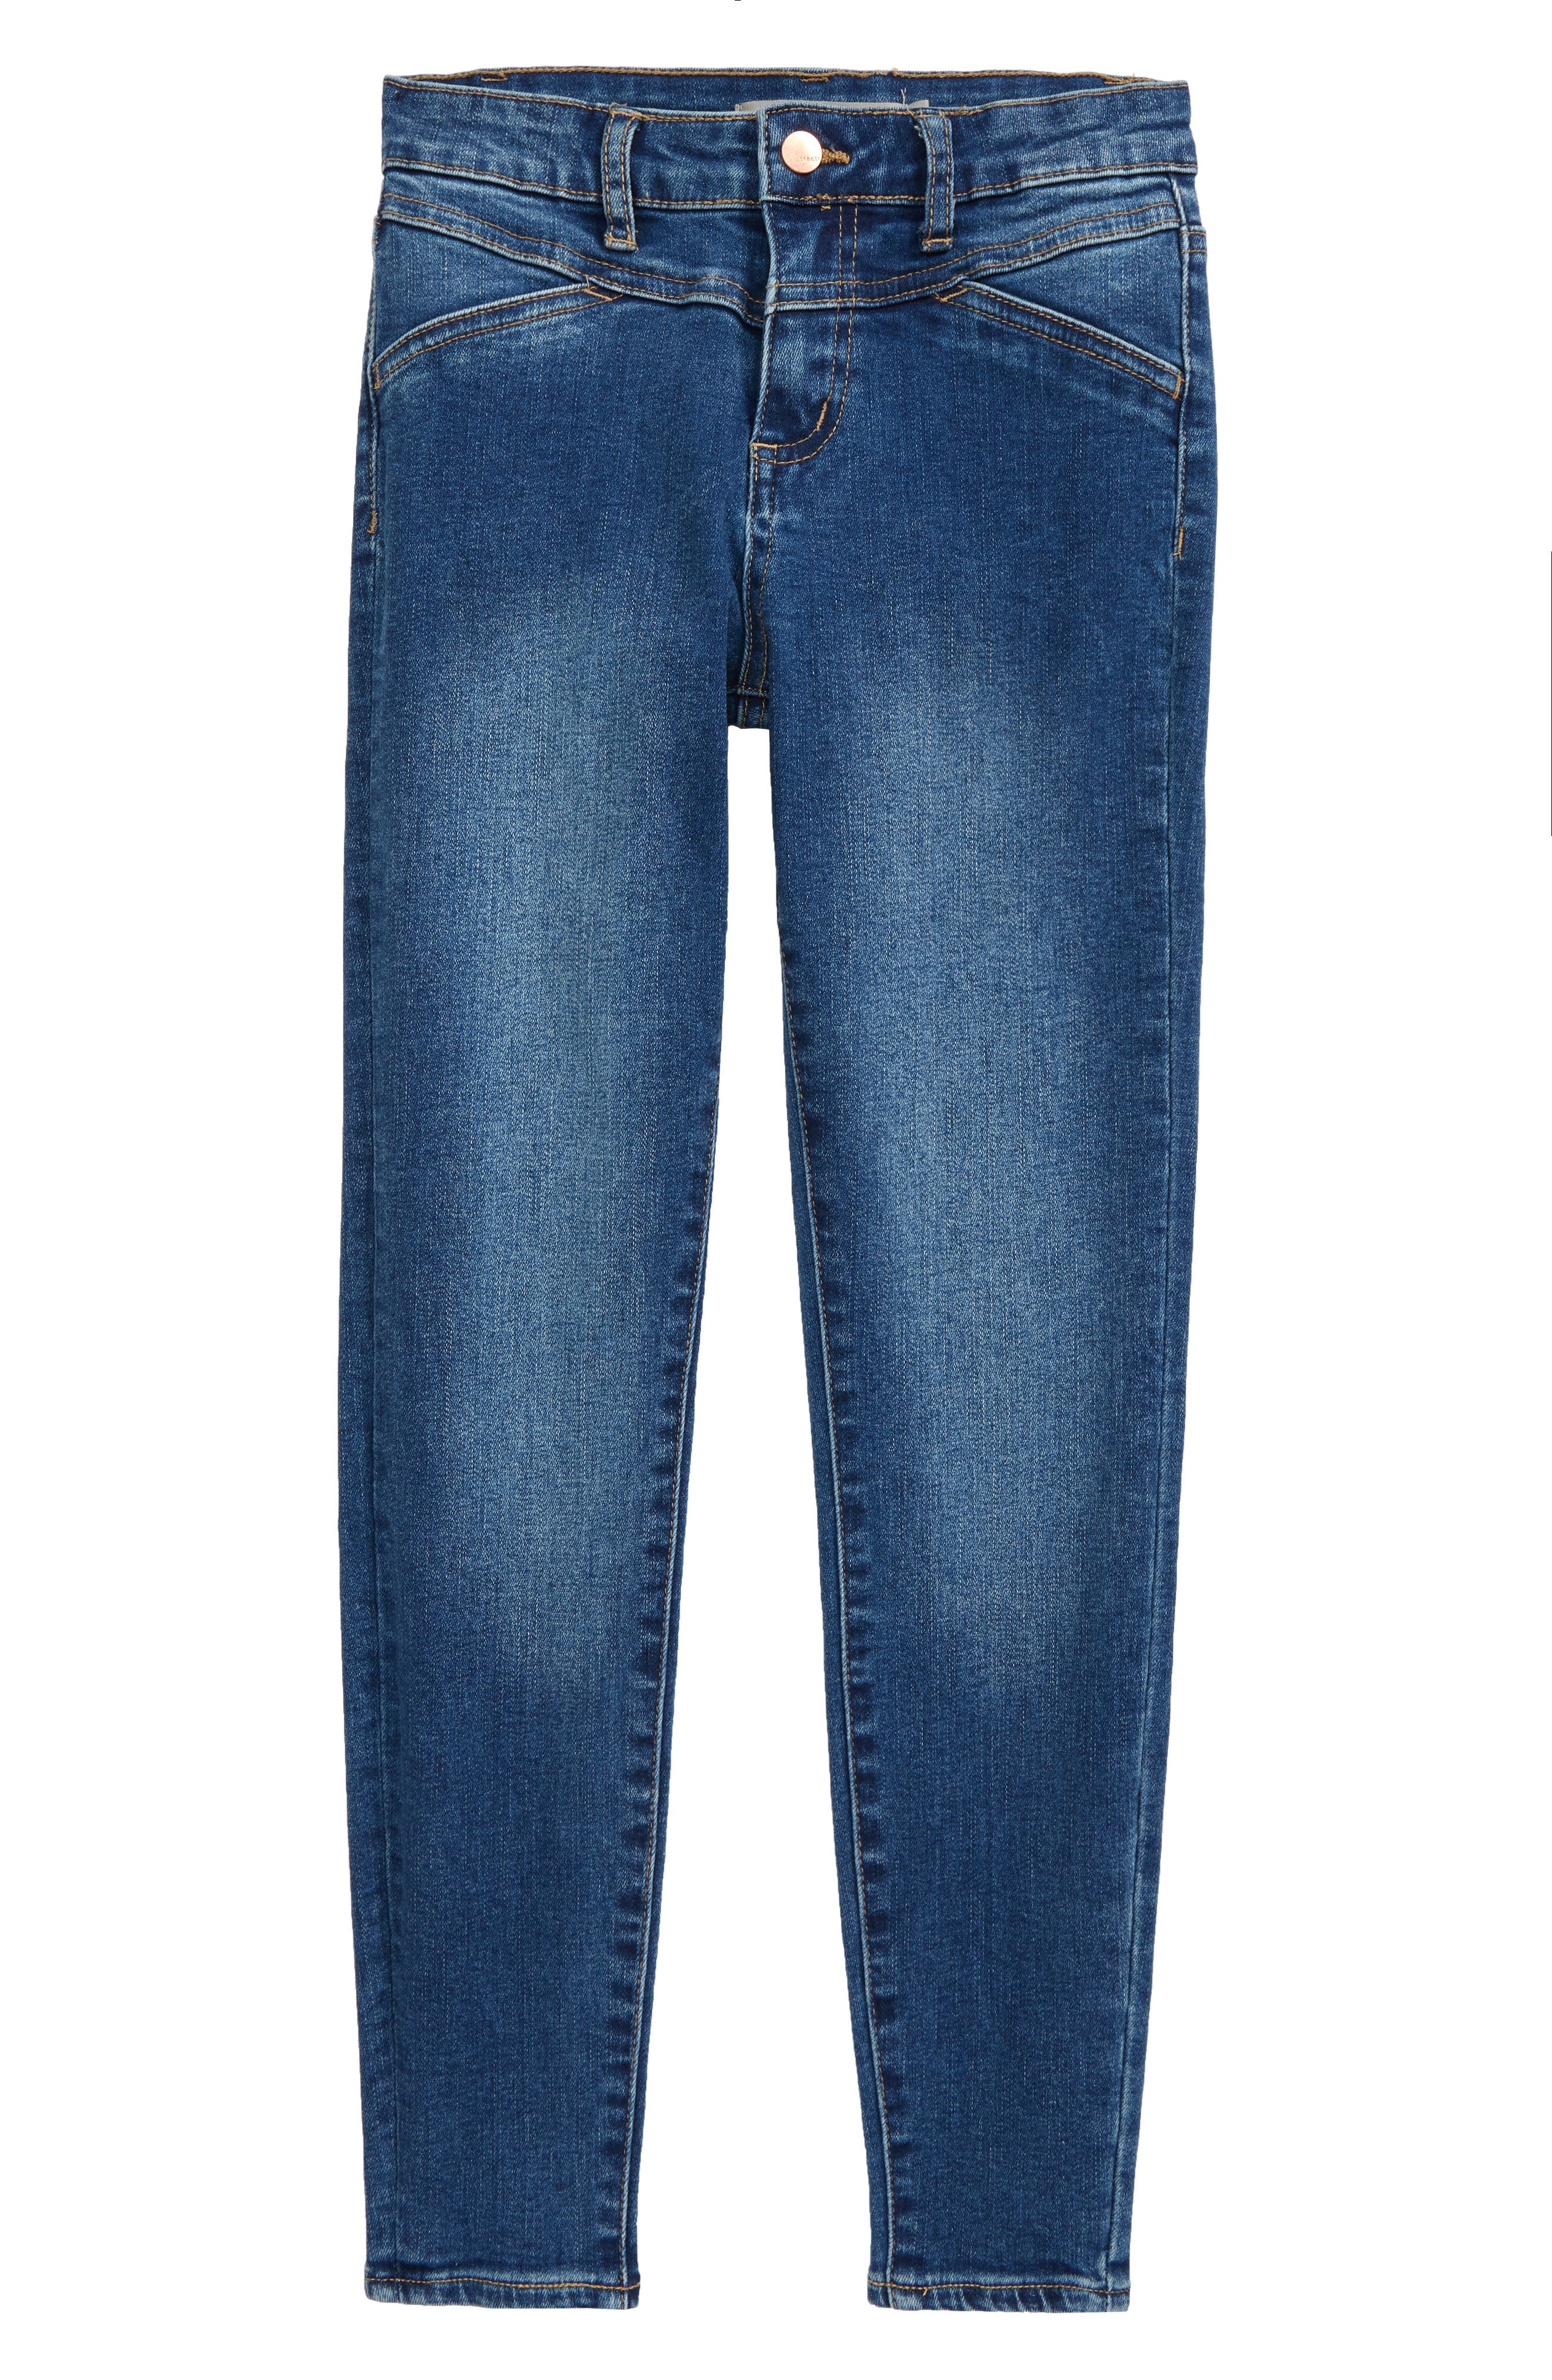 new jeans design girl